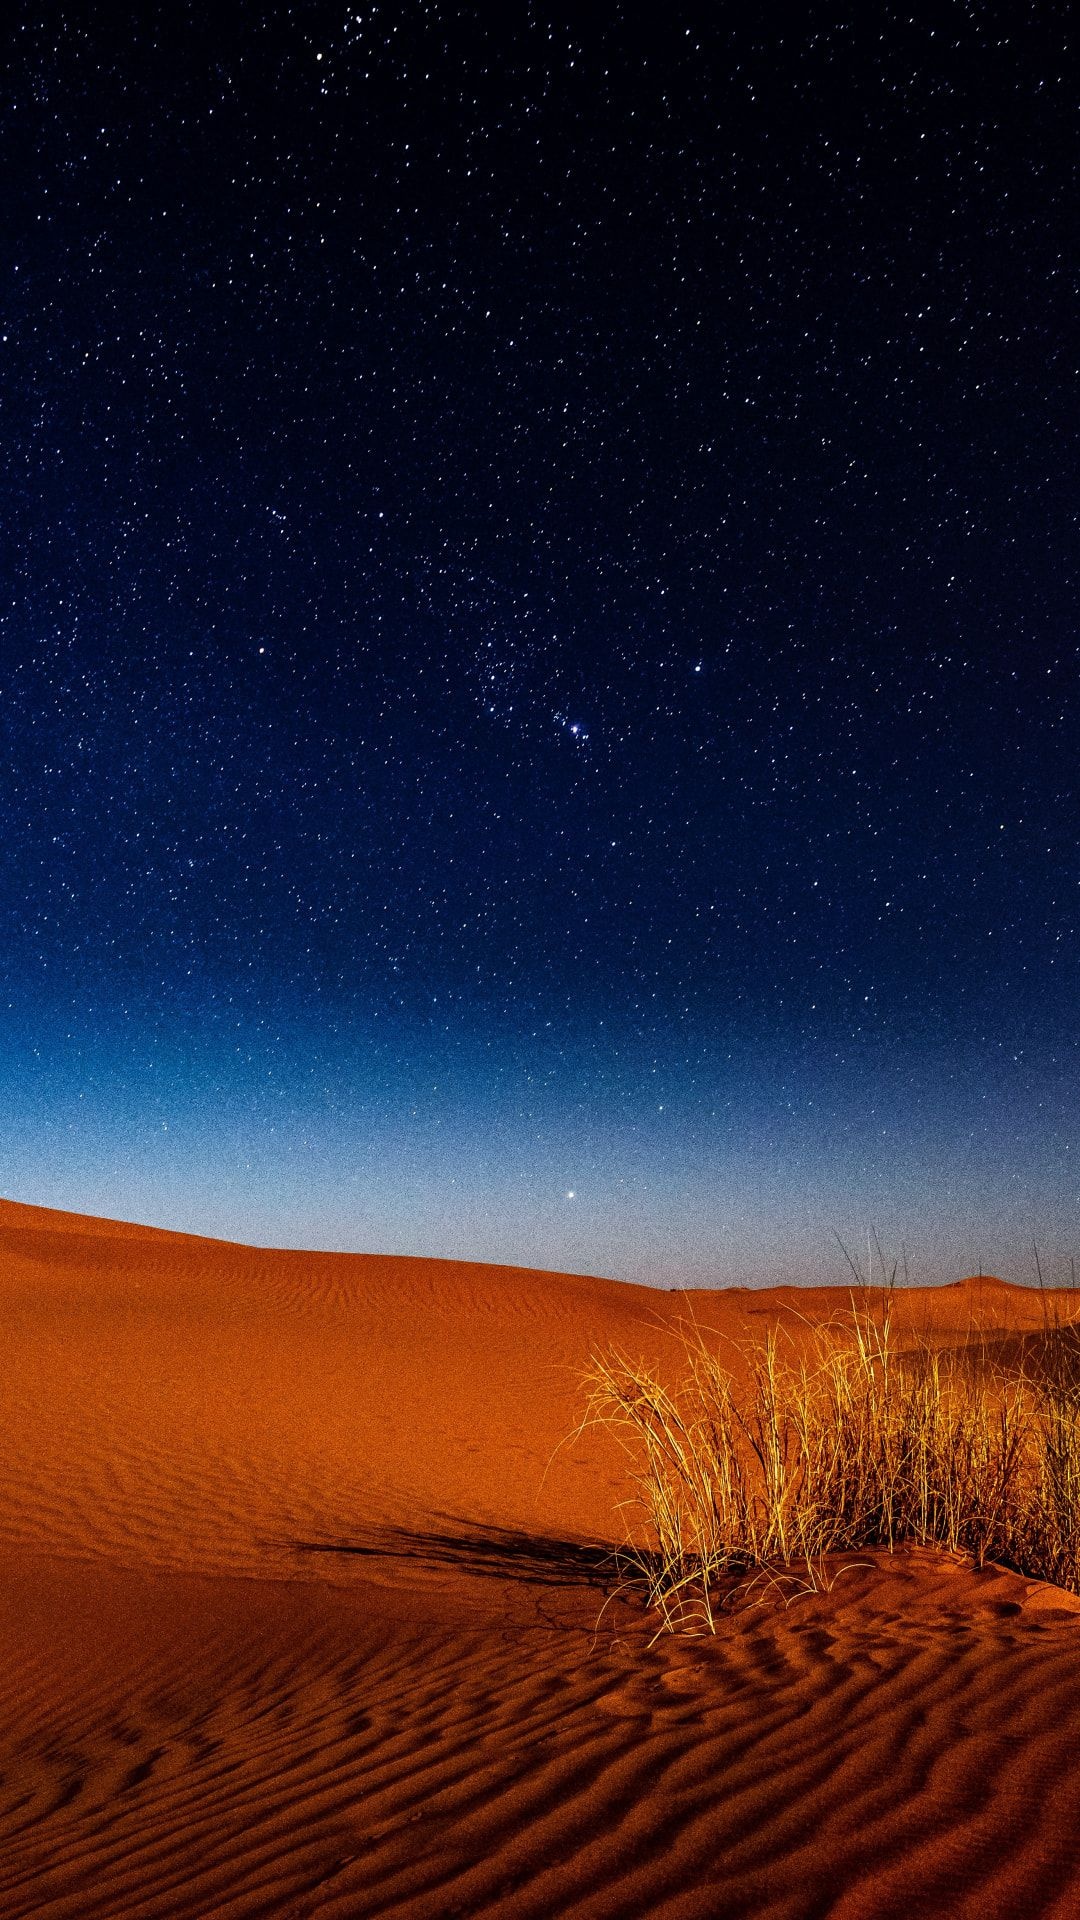 Gobi Desert, Desert at night, Nocturnal beauty, Starry skies, 1080x1920 Full HD Handy